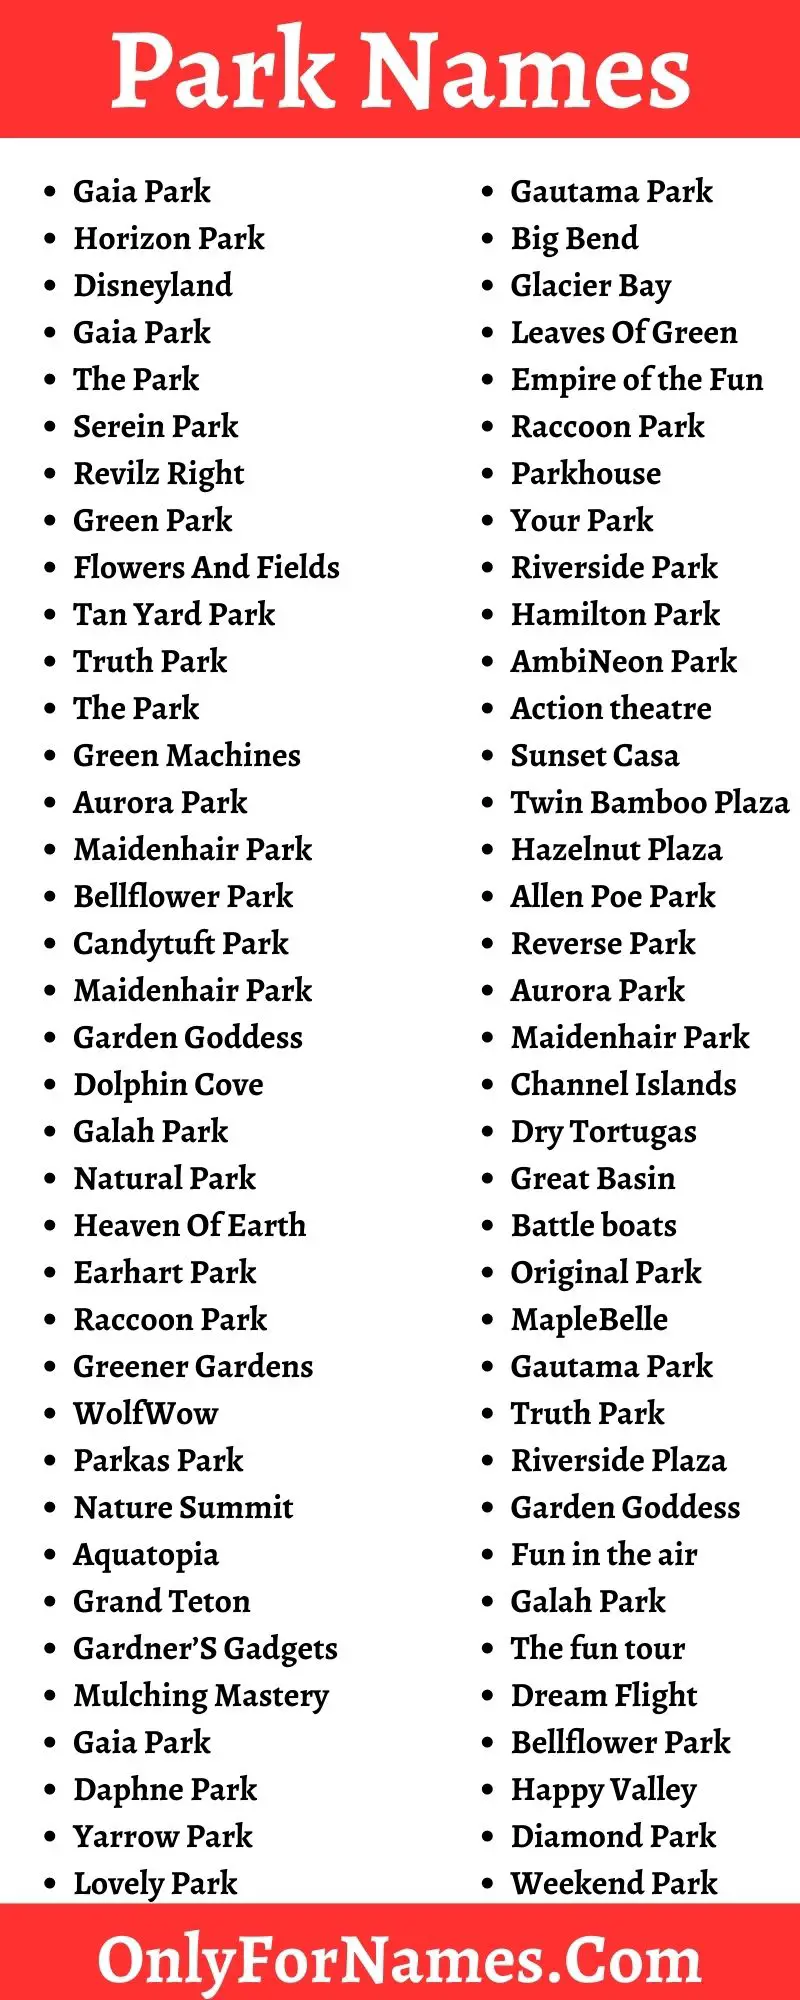 Park Names